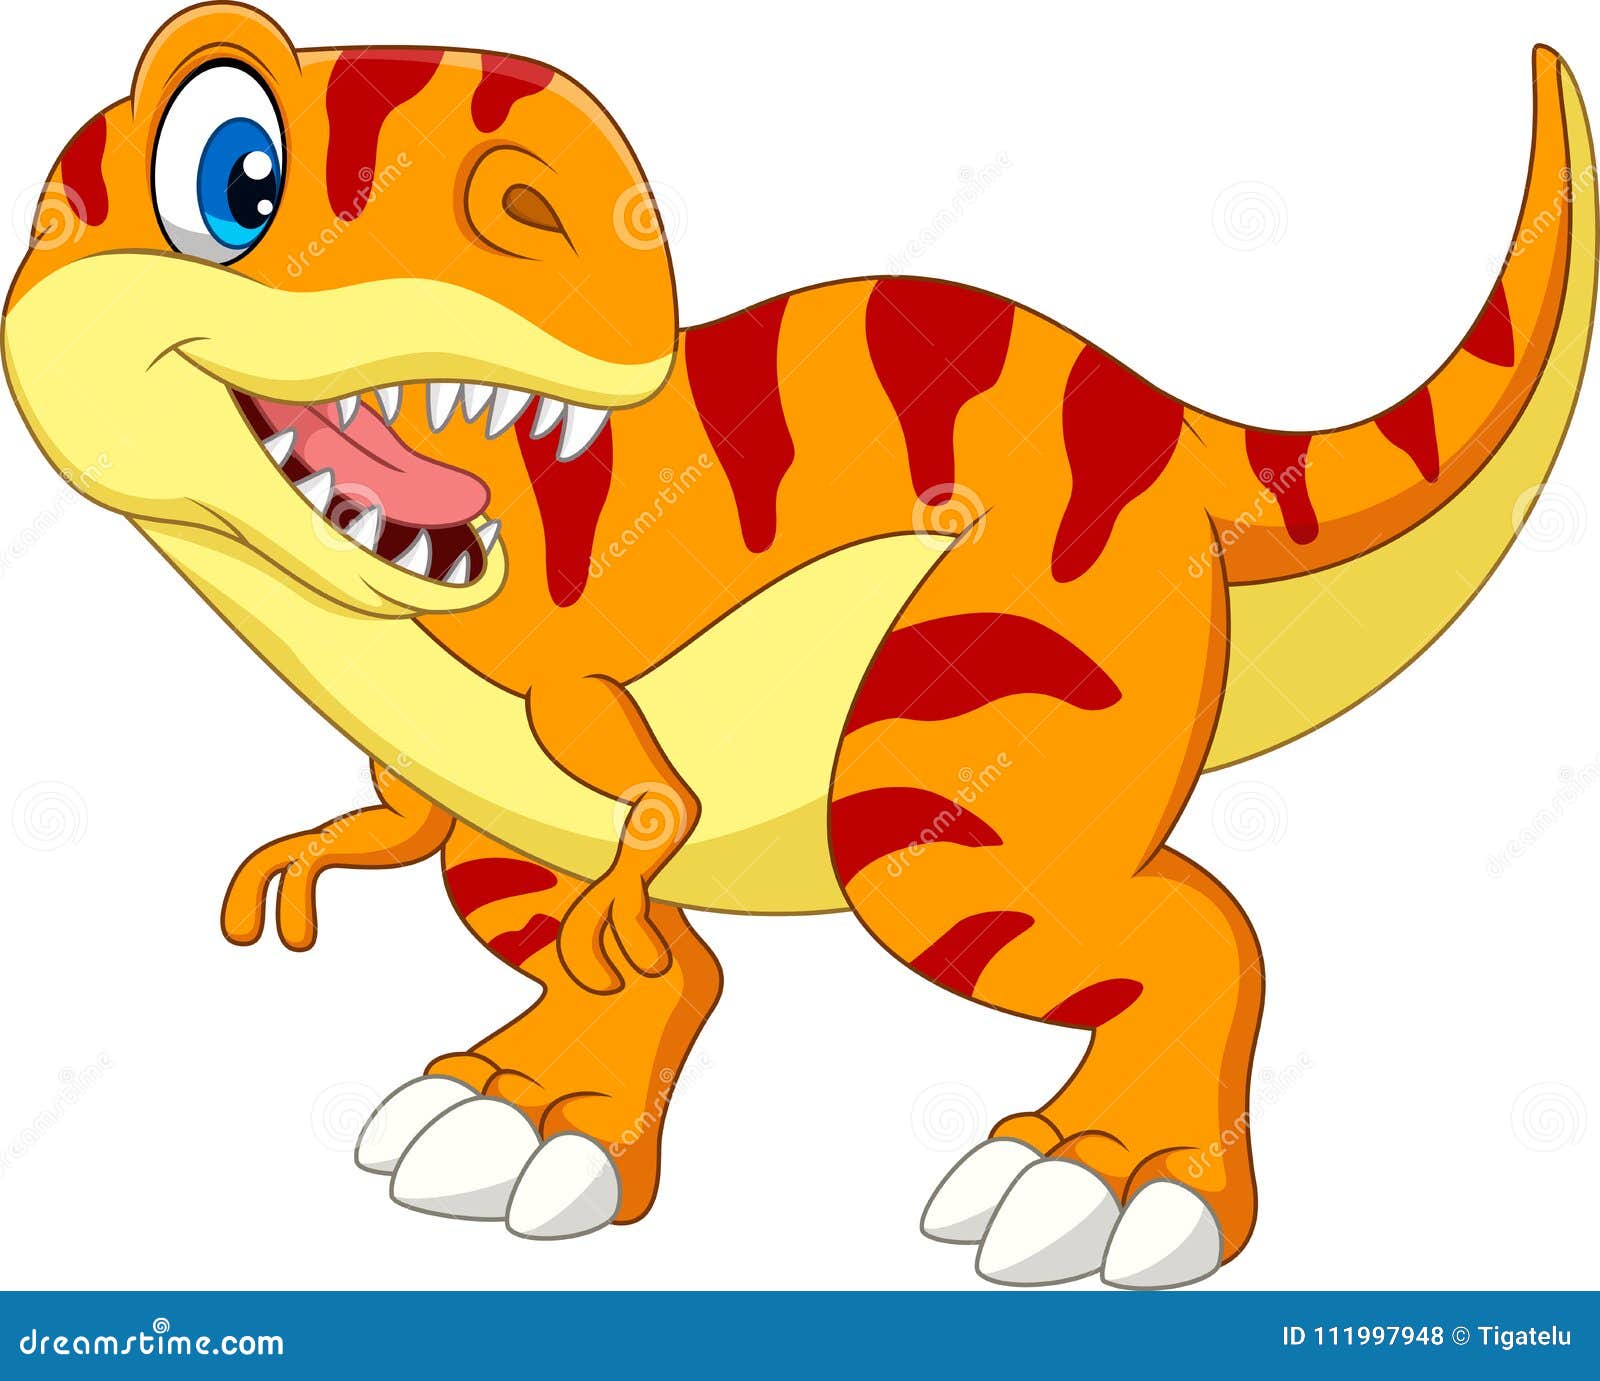 Desenho de dinossauro  Imagenes de dinosaurios infantiles, Dinosaurios  rex, Imagenes de dinosaurios animados